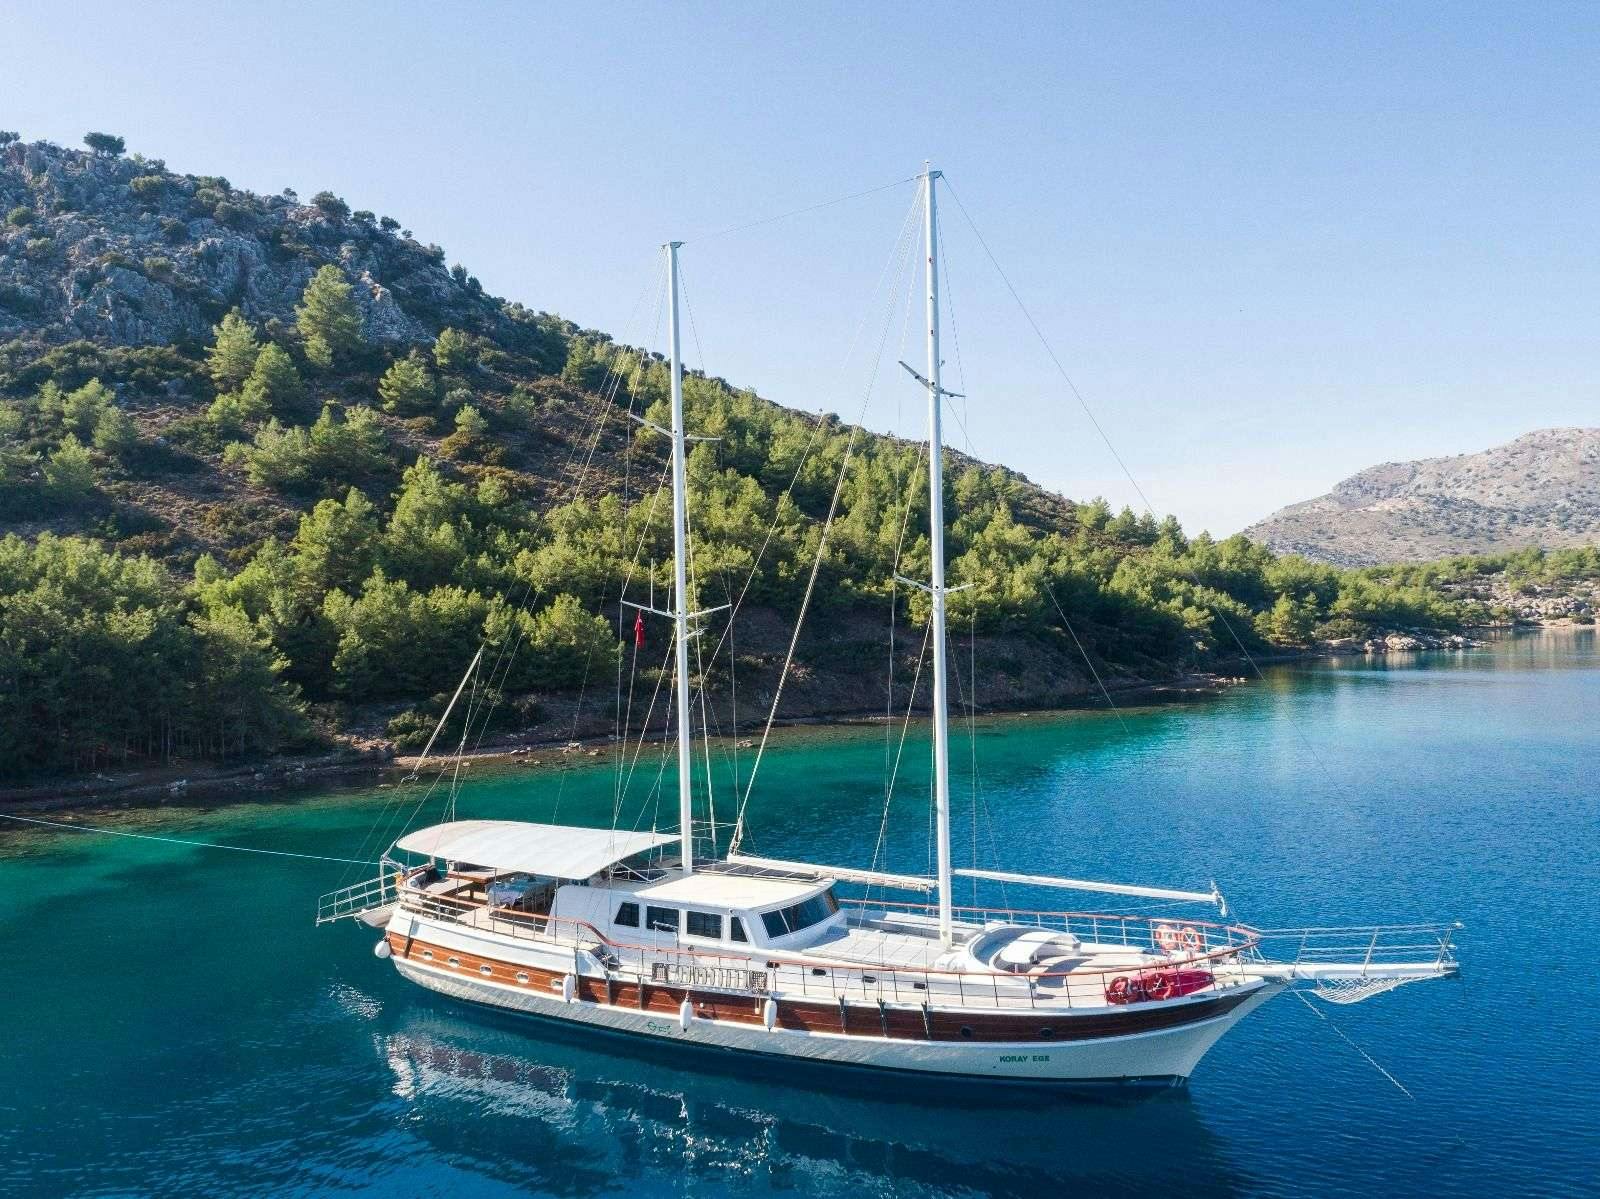 koray ege - Yacht Charter Zakynthos & Boat hire in Greece & Turkey 1